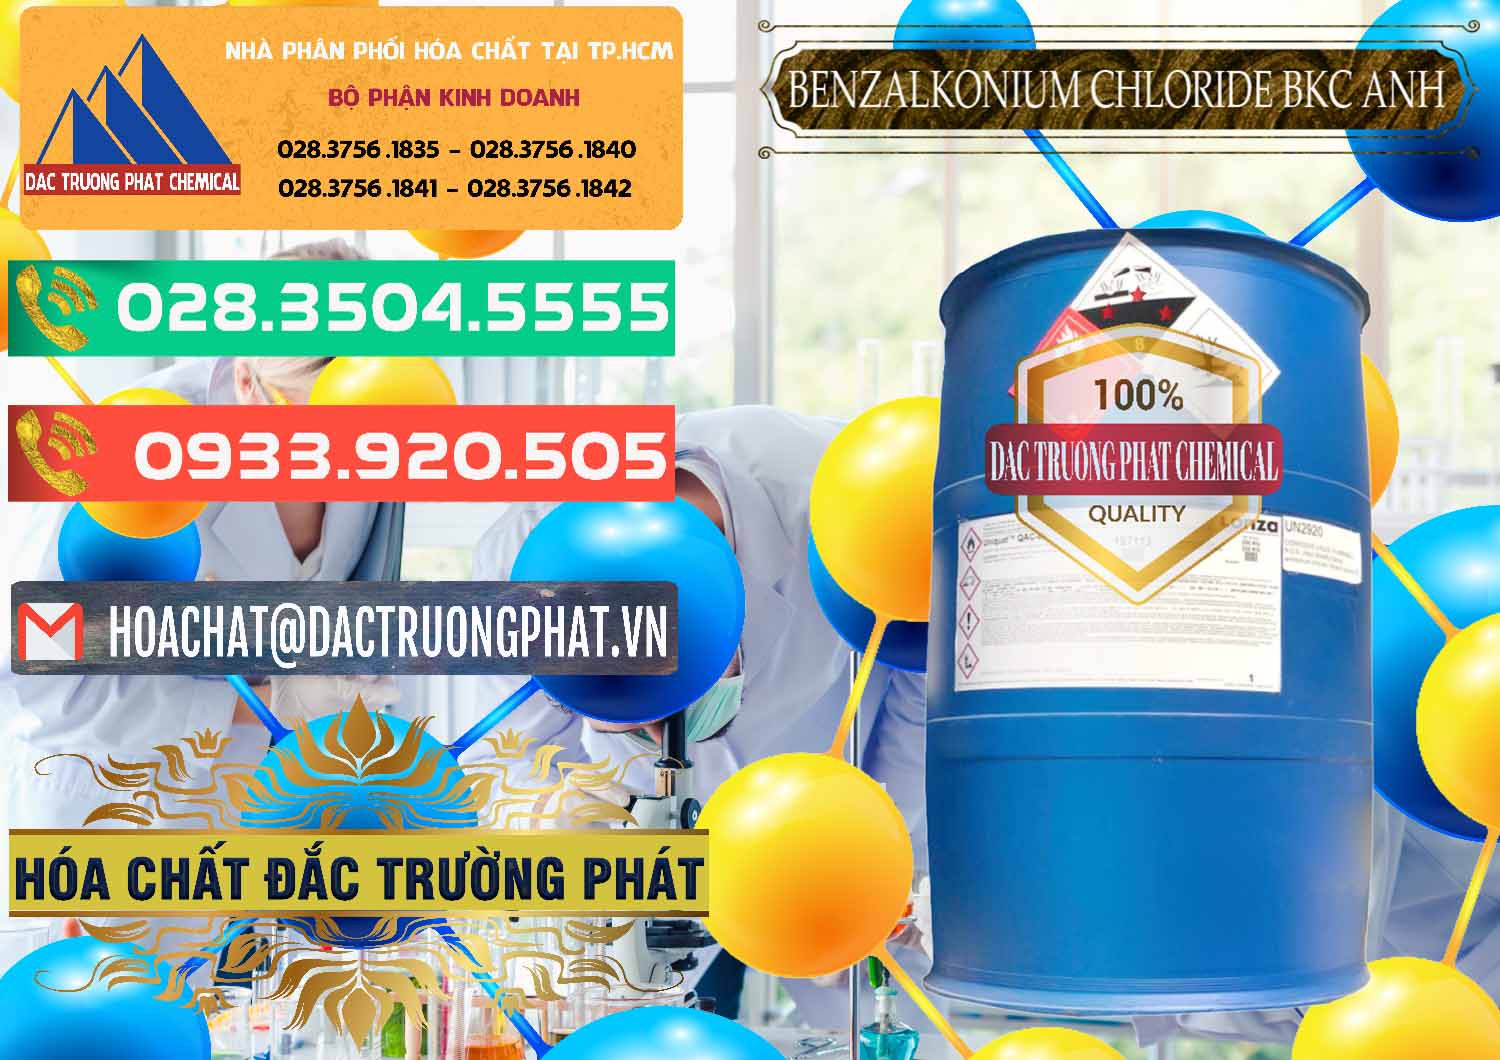 Cty bán & cung cấp BKC - Benzalkonium Chloride 80% Anh Quốc Uk Kingdoms - 0457 - Cung cấp & nhập khẩu hóa chất tại TP.HCM - congtyhoachat.com.vn